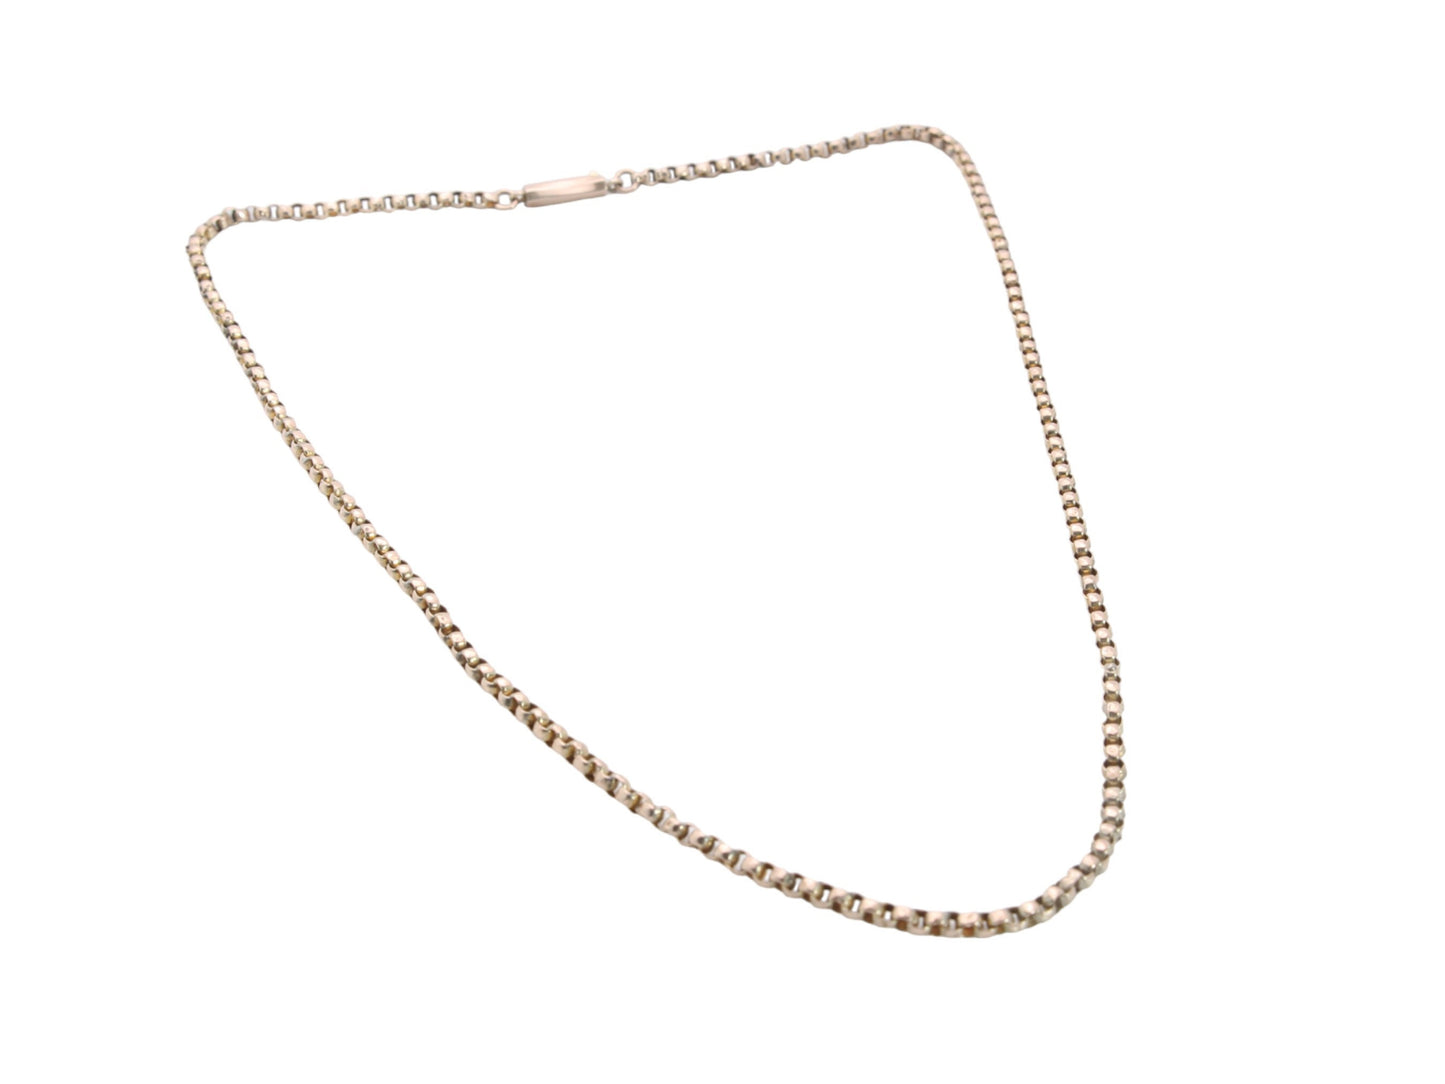 Antique 9ct Gold Belcher Link Necklace